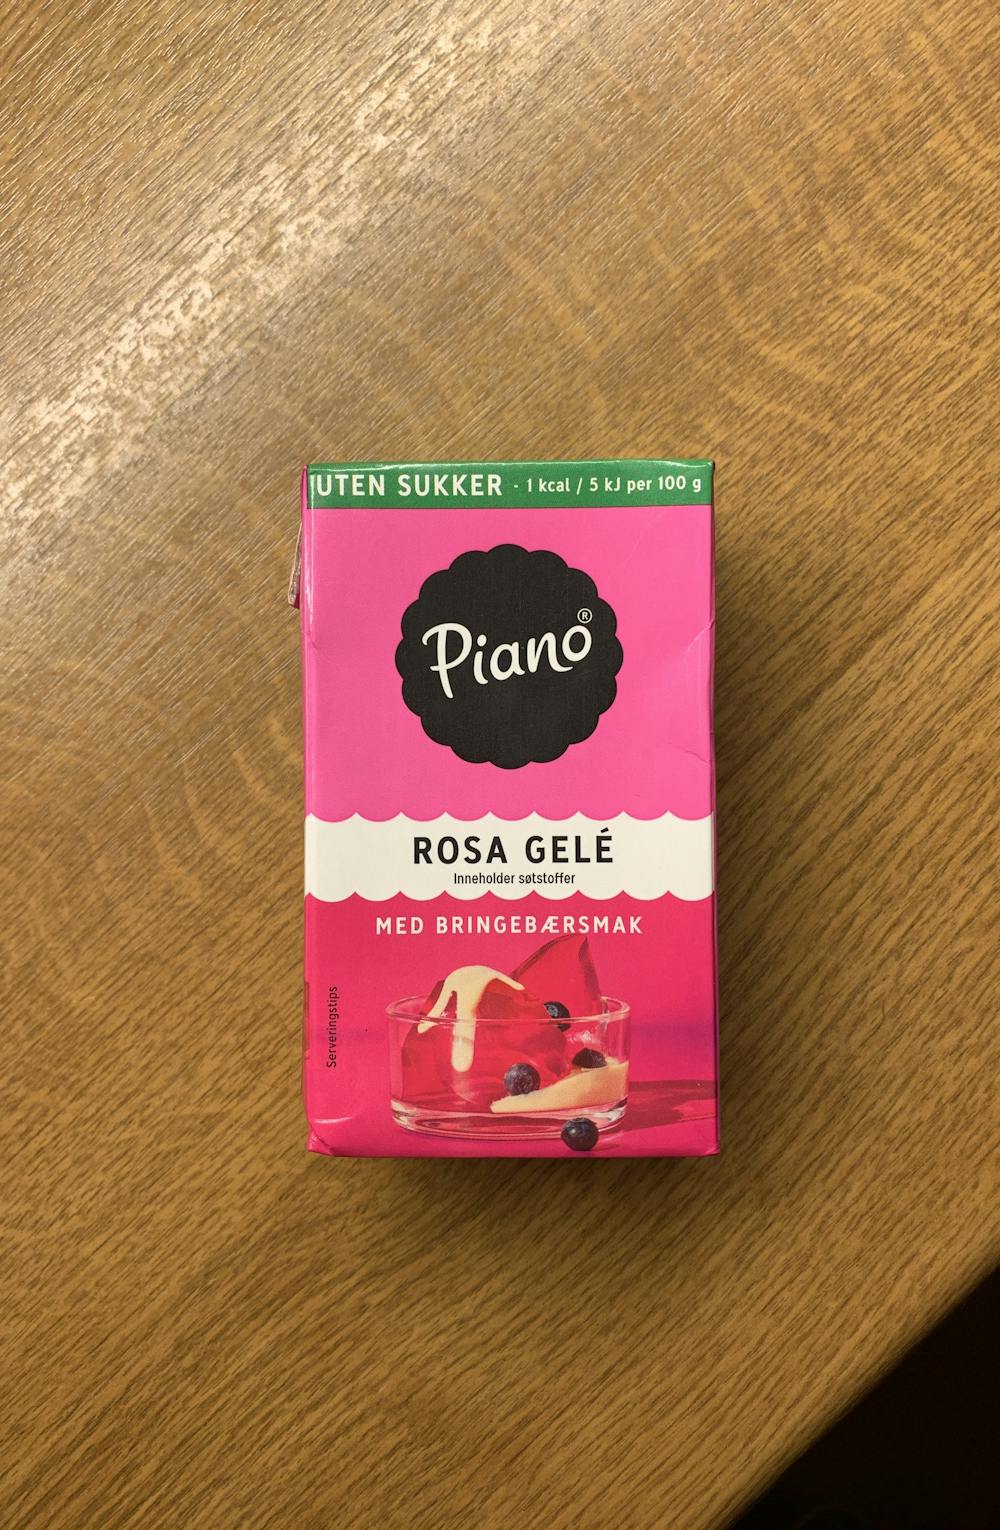 Rosa gelé med bringebærsmak, uten sukker, Piano